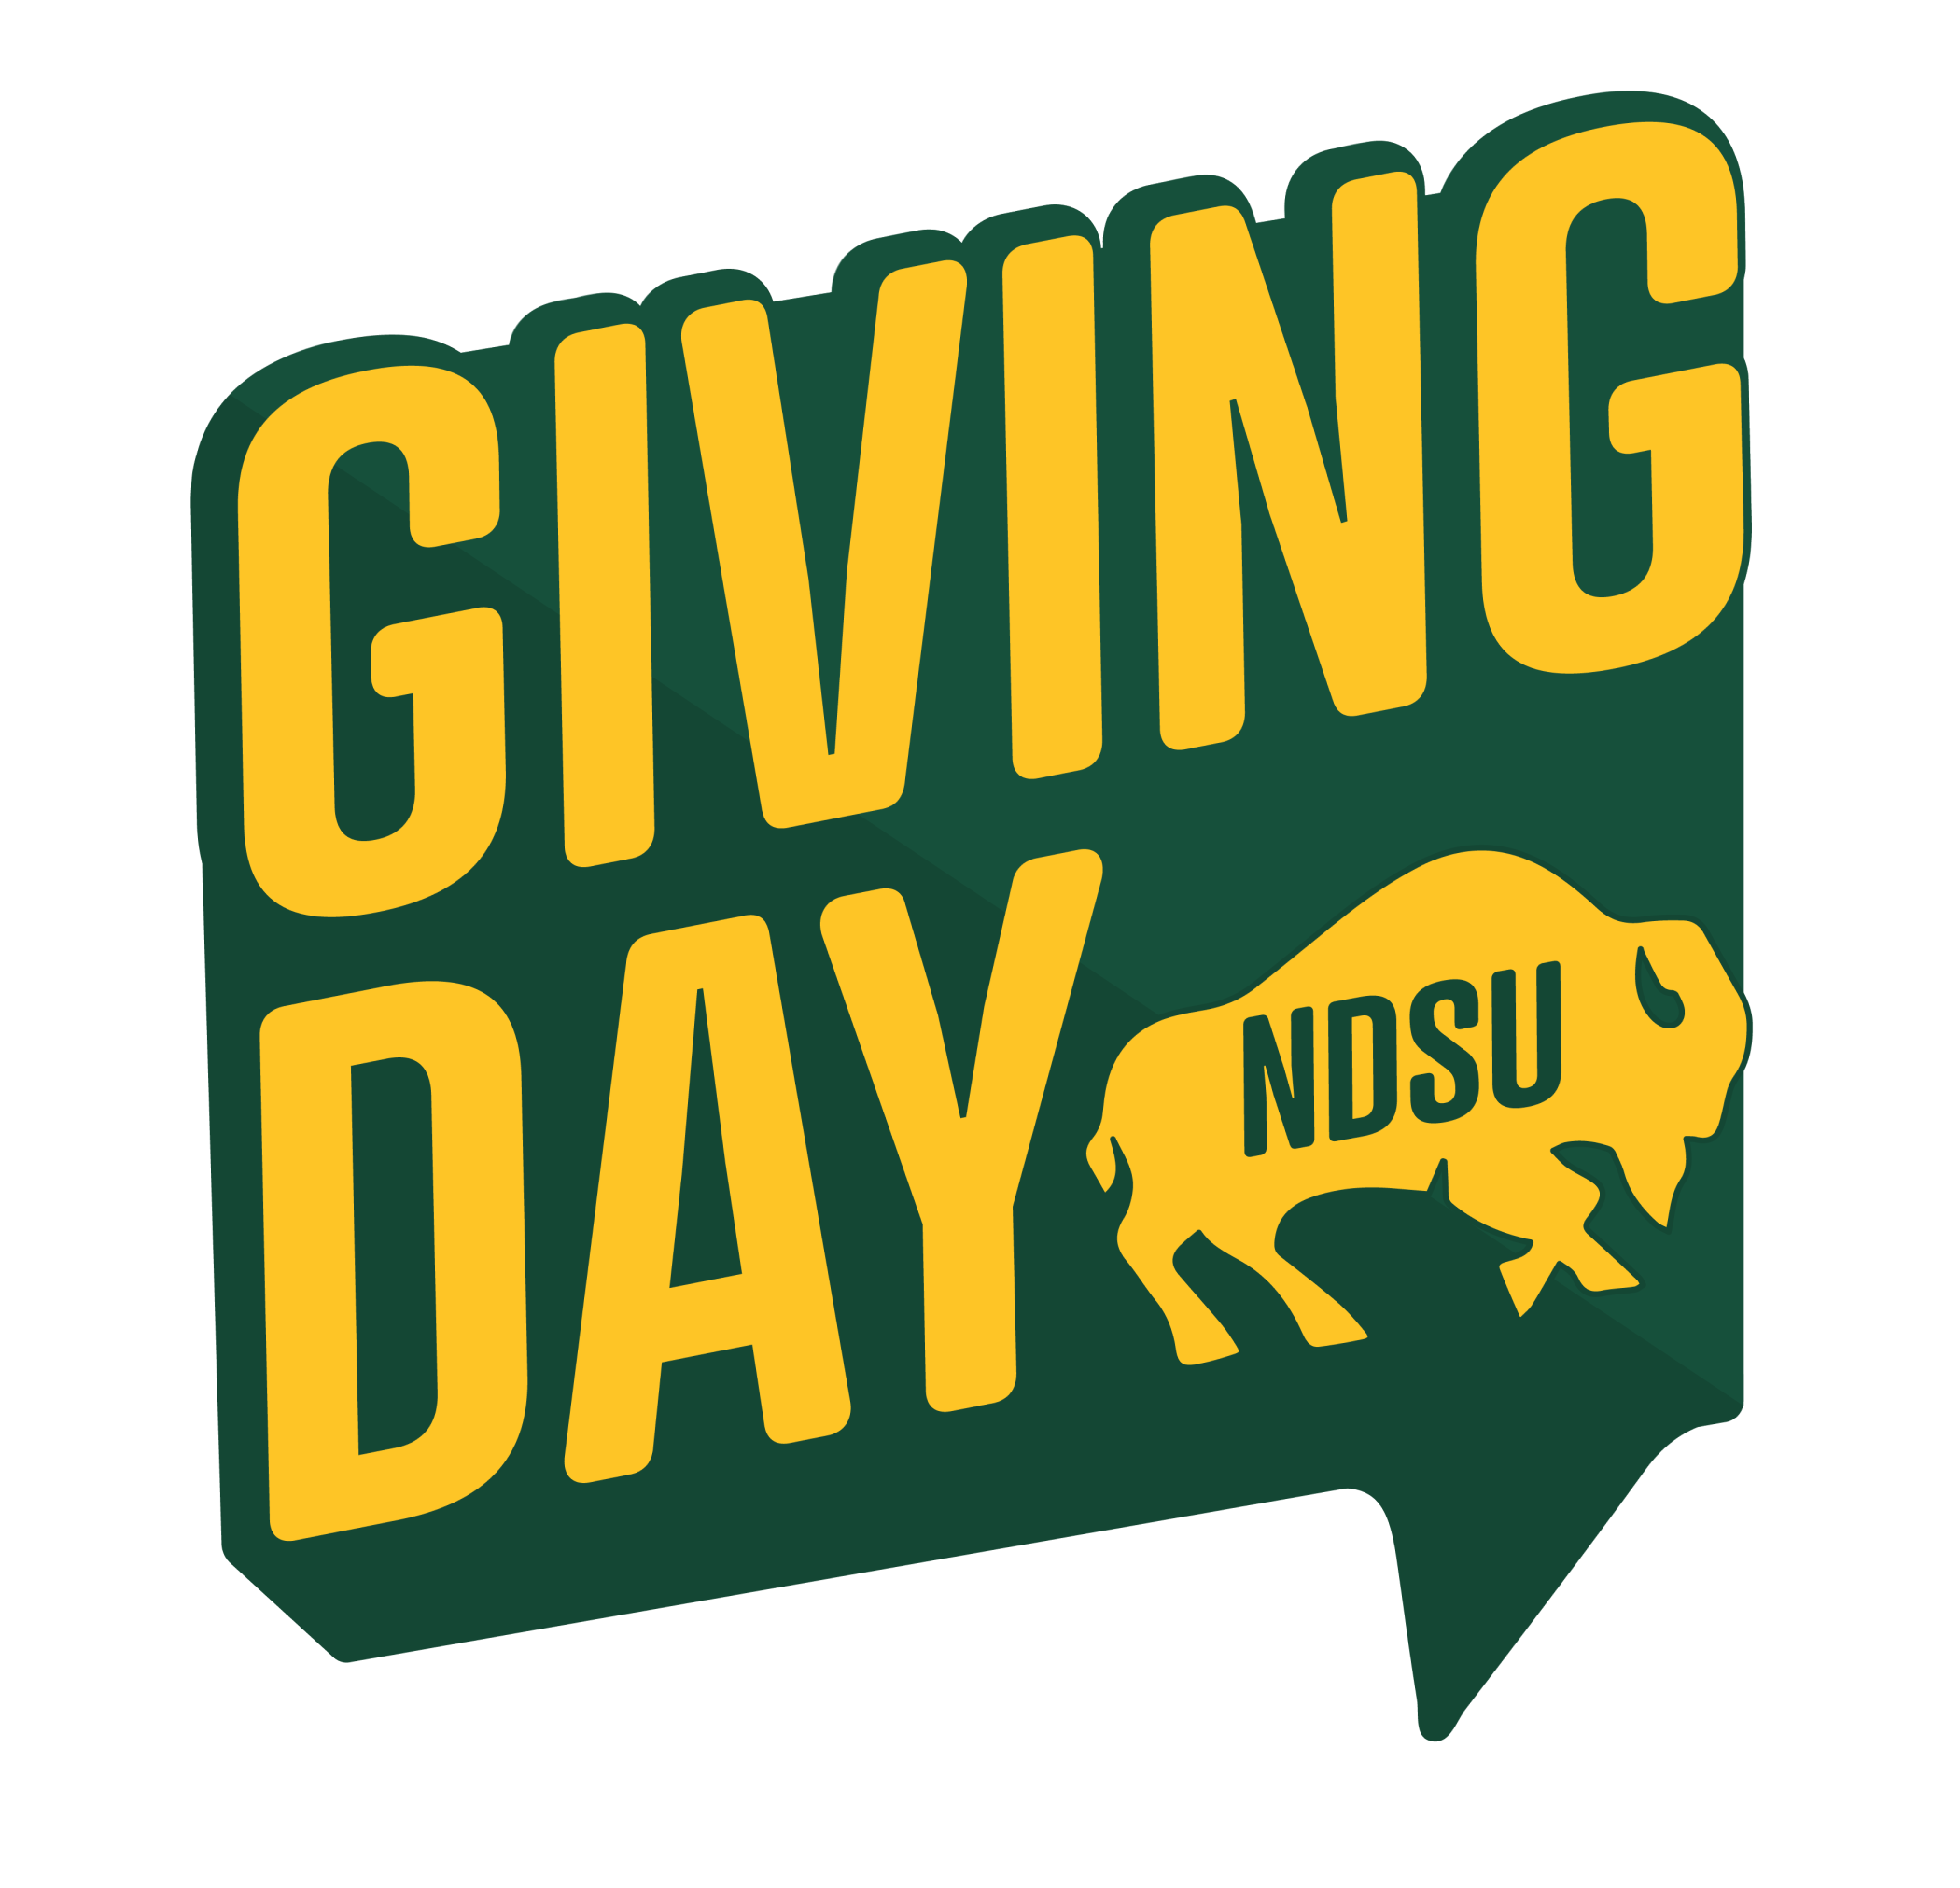 NDSU Giving Day